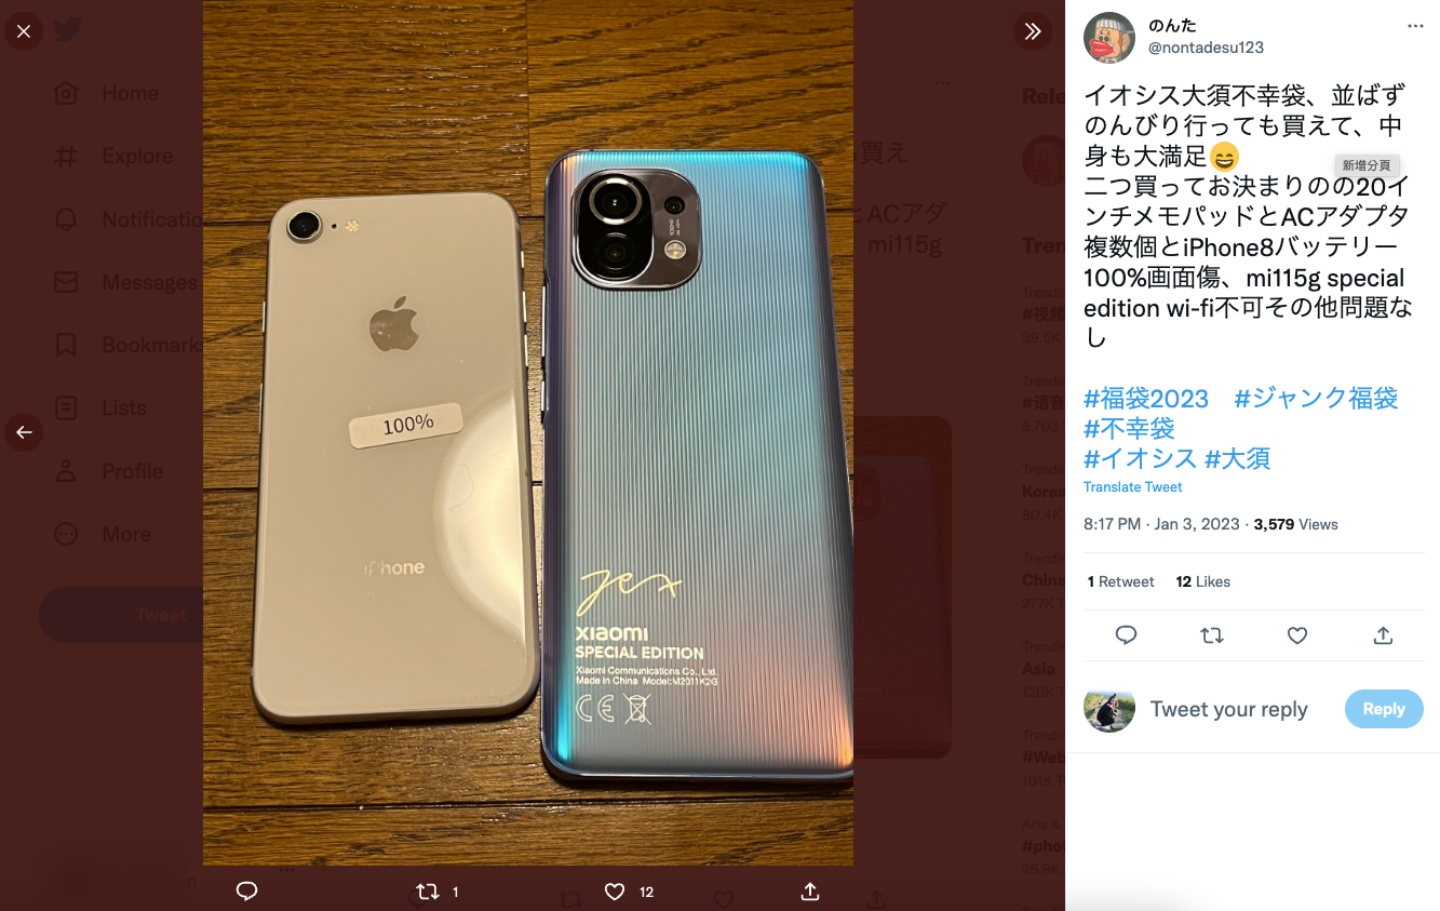 日本網友開箱『 不幸福袋 』！除了有各種廢到不行的產品 竟然還有 iPhone 藏在裡頭？